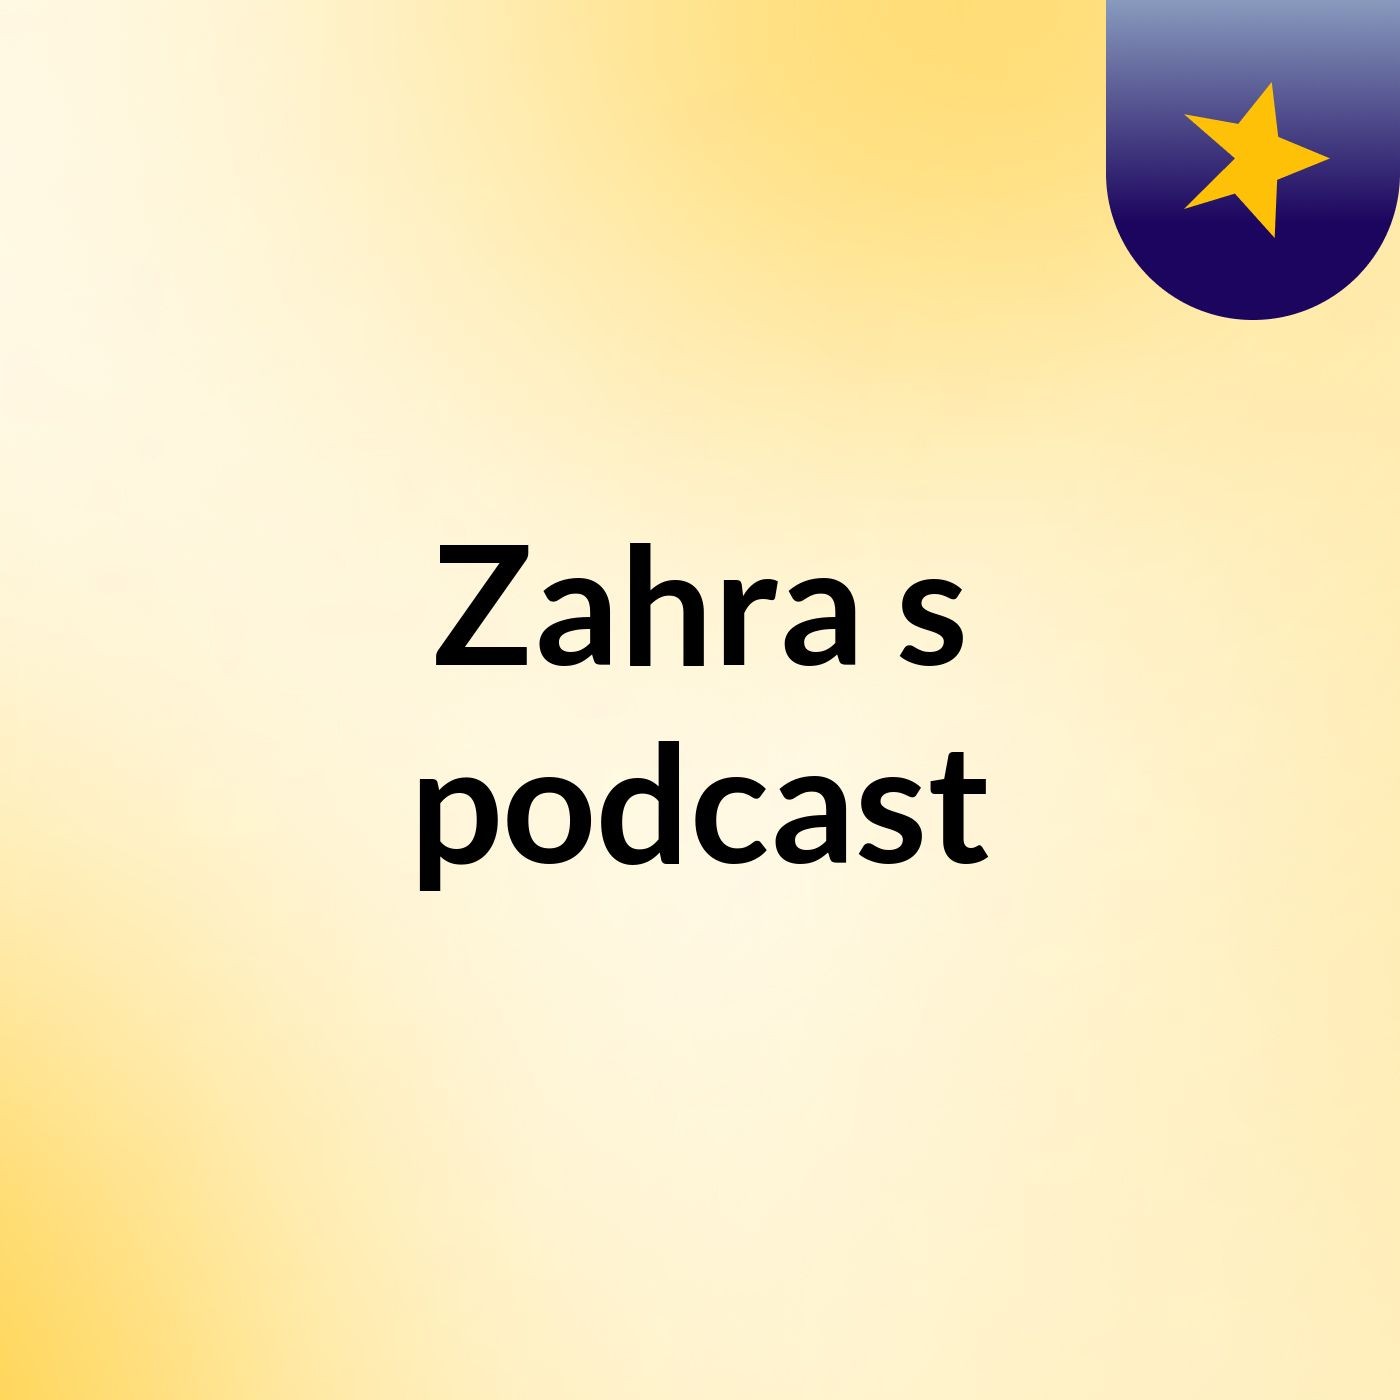 Zahra's podcast